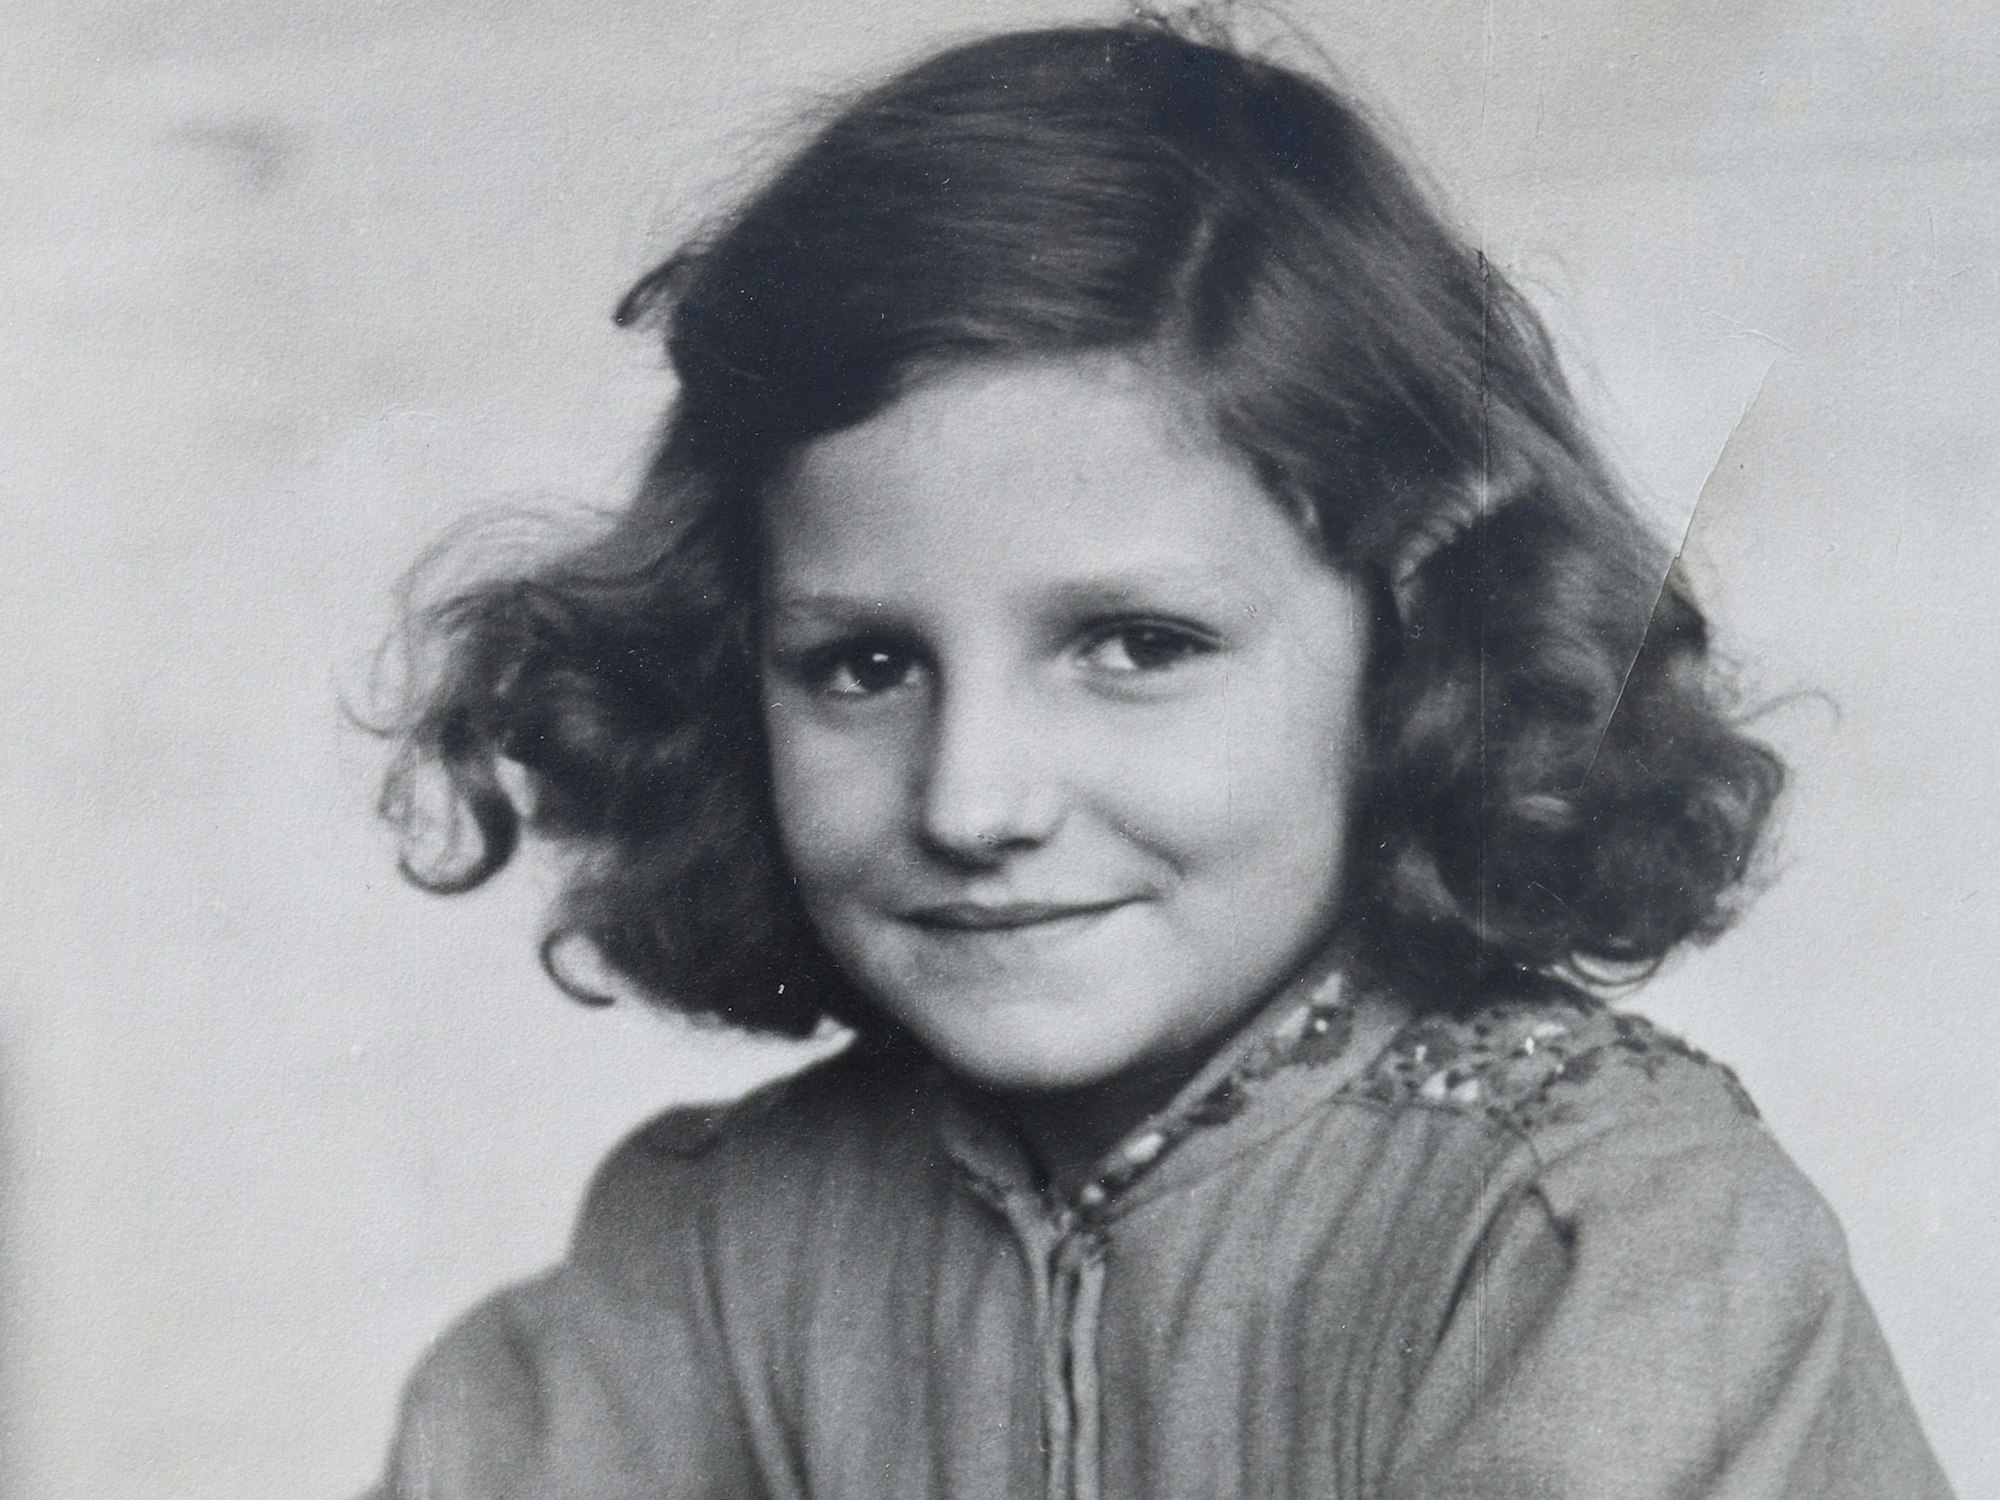 Tina Farina als Schülerin auf einem schwarz-weiß-Bild